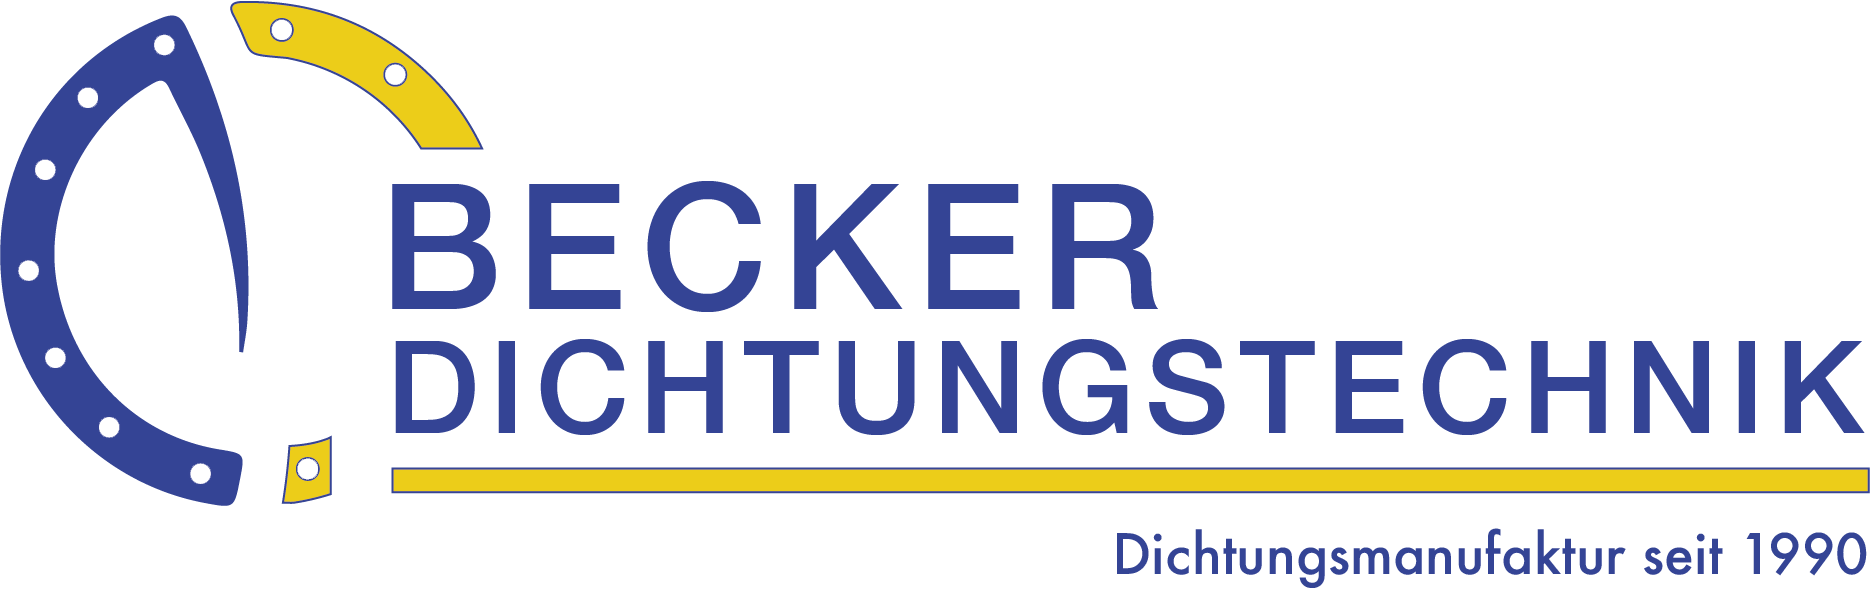 Becker Dichtungstechnik GmbH